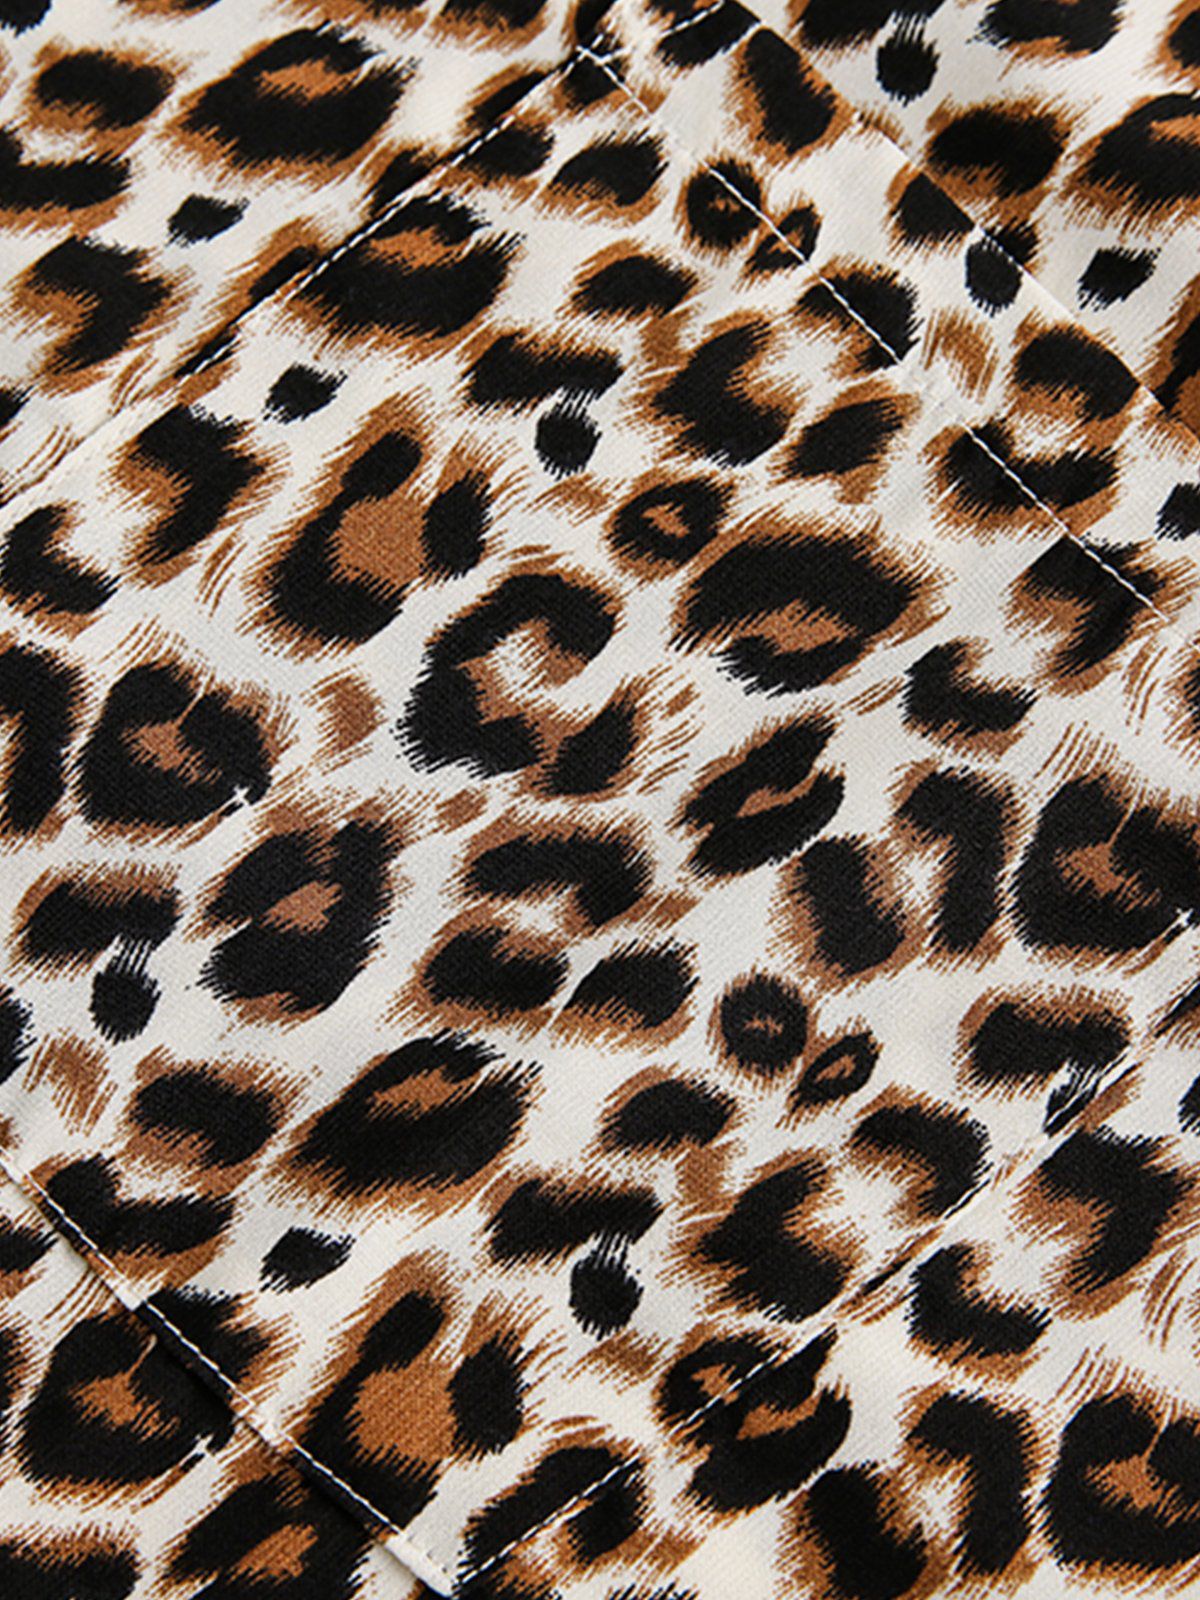 Aelfric Eden Apricot Leopard Print Short Sleeve Shirt